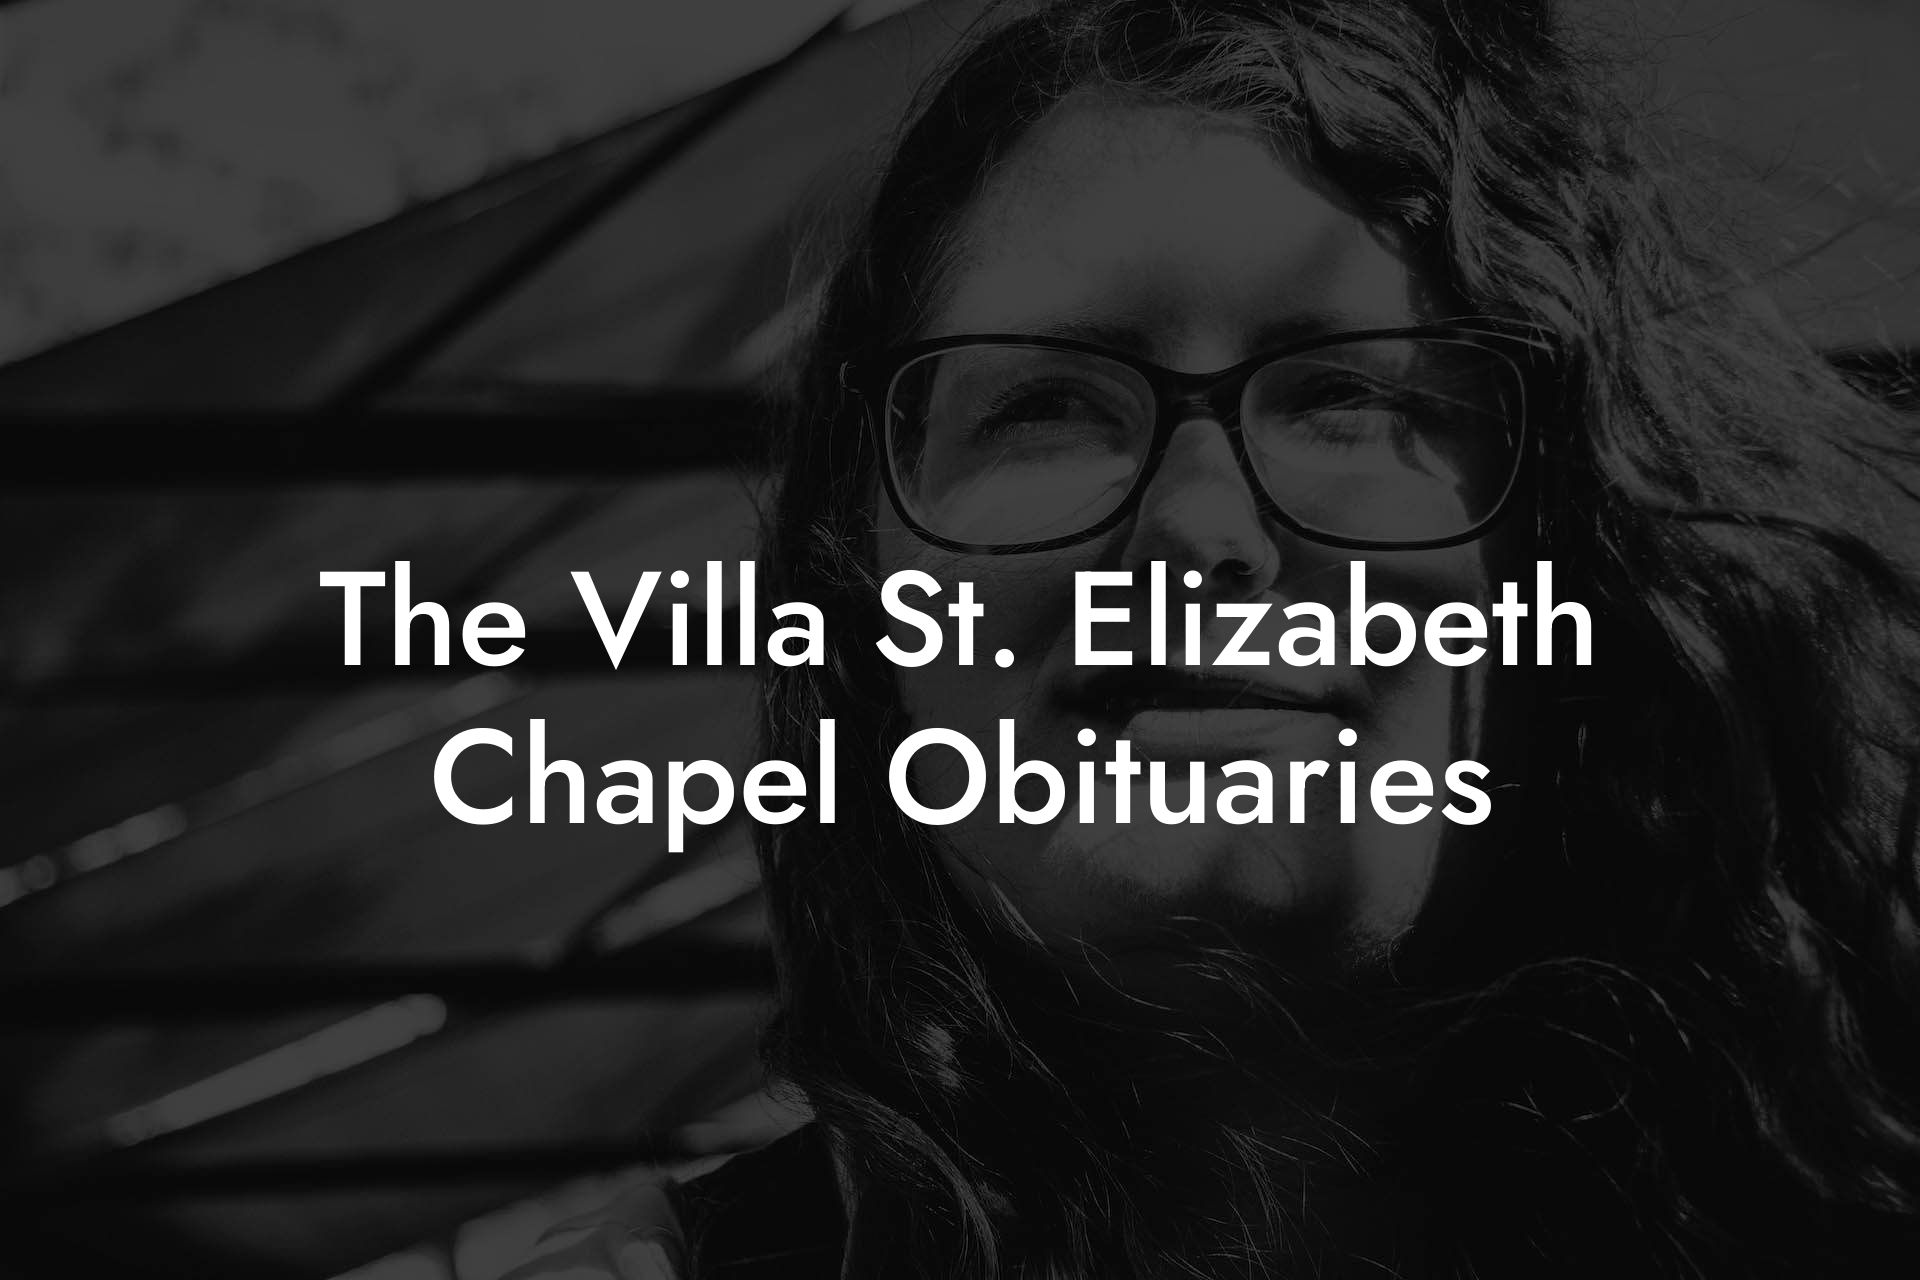 The Villa St. Elizabeth Chapel Obituaries